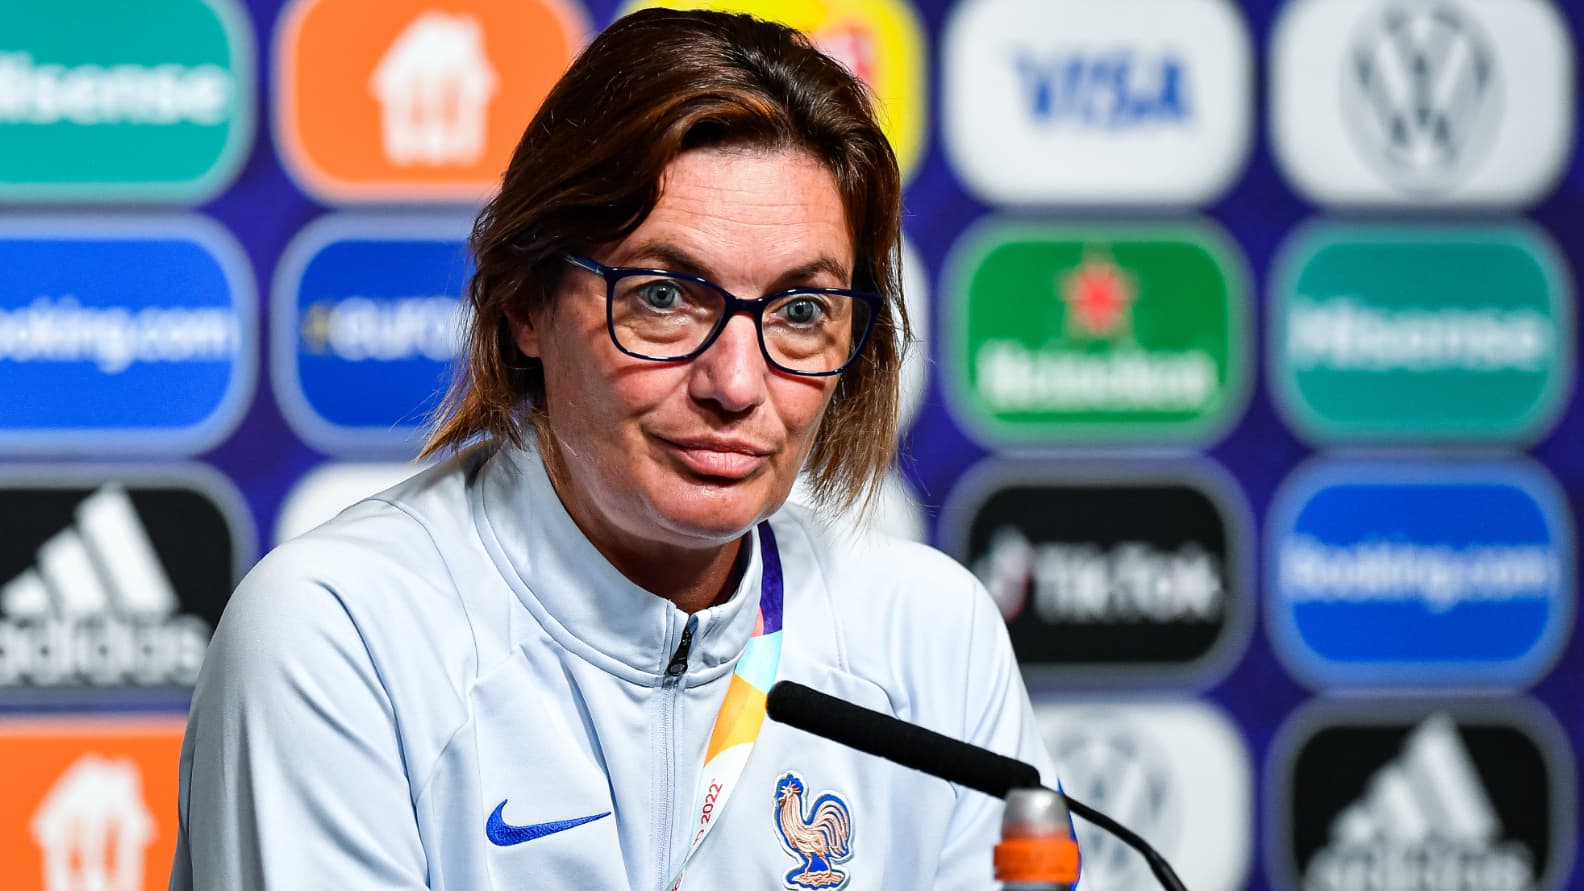 EN DIRECT - Equipe de France féminine: Diacre annonce le retour d'Hamraoui et botte en touche concernant Le Graët - RMC Sport